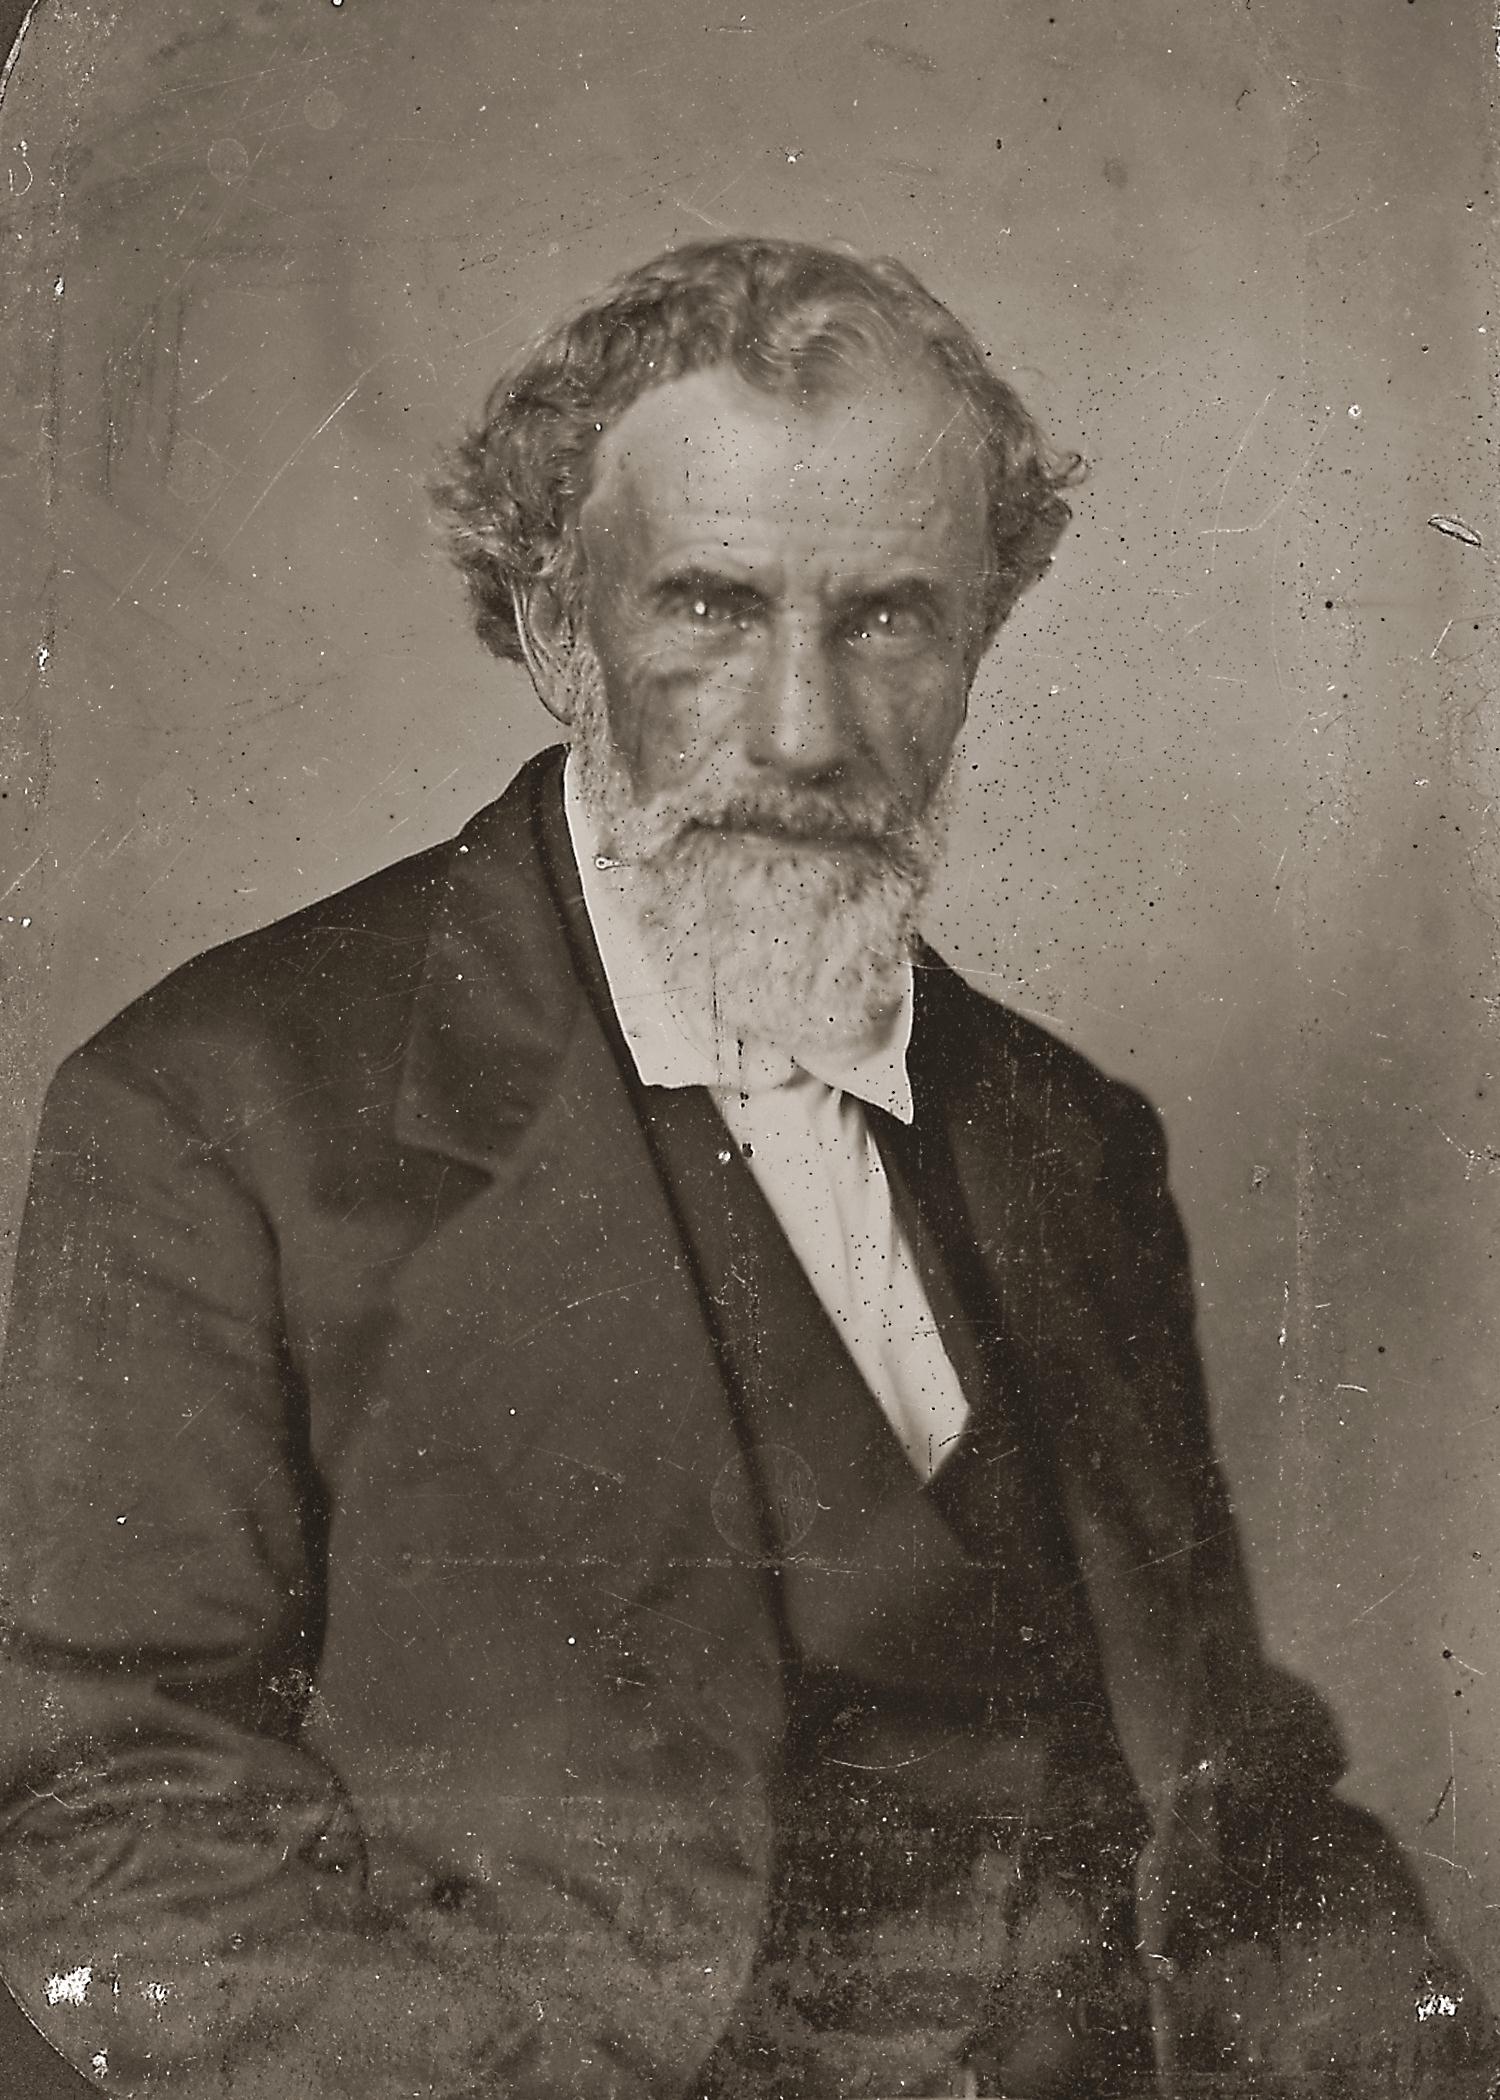 Thomas W. Hamilton